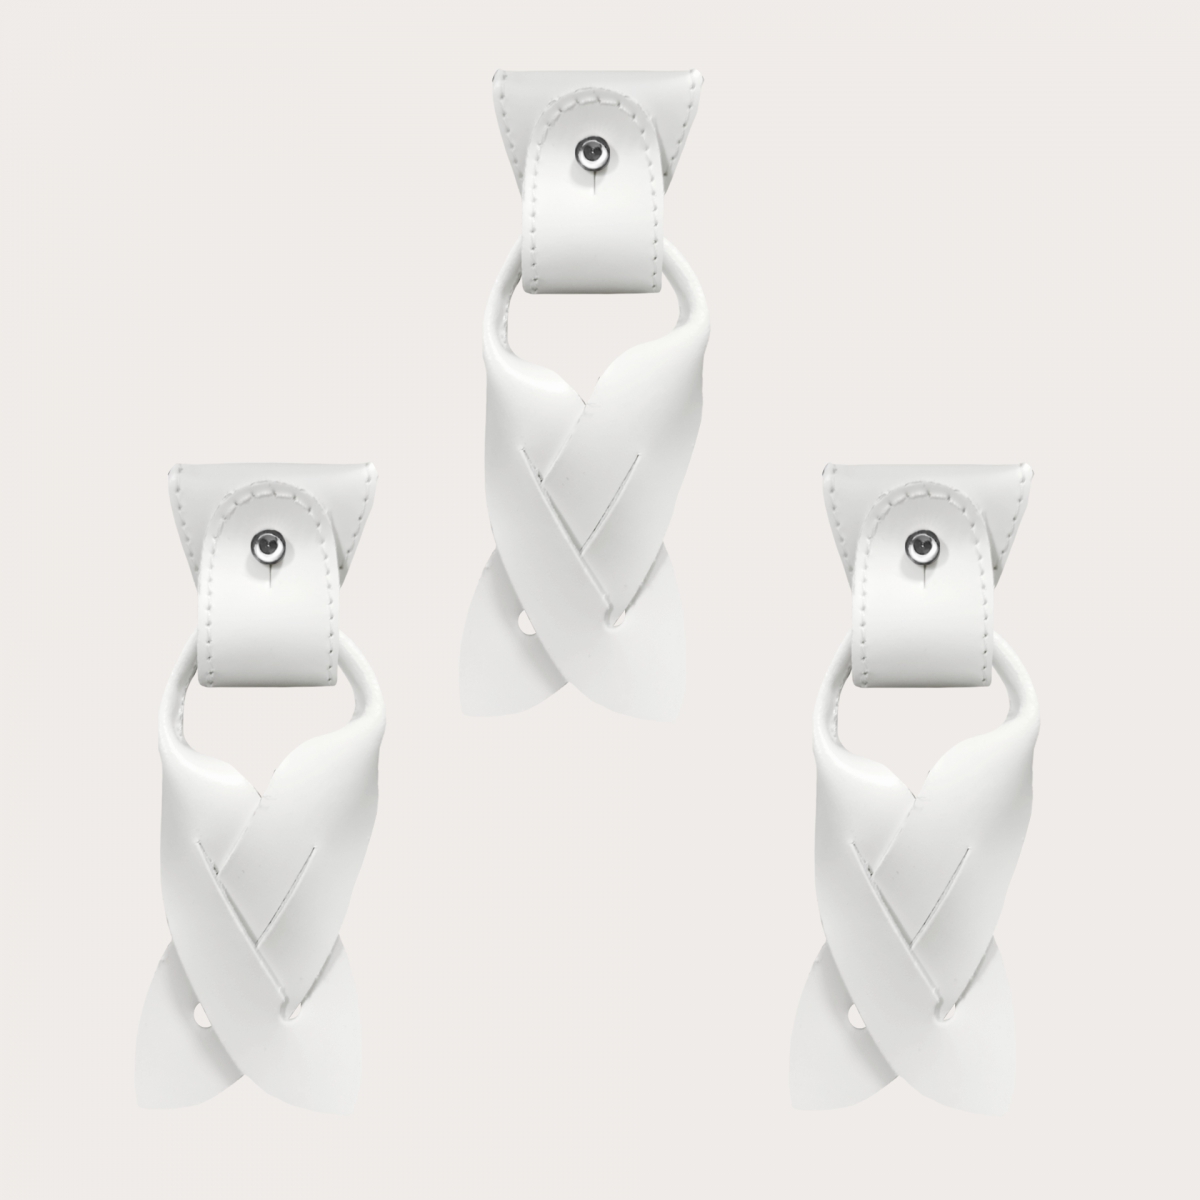 Konvertierbare Enden + terminals für Knöpfe weiß aus Leder für Hosenträger Y-Form Hosenträger mit Clips oder zum Knöpfen